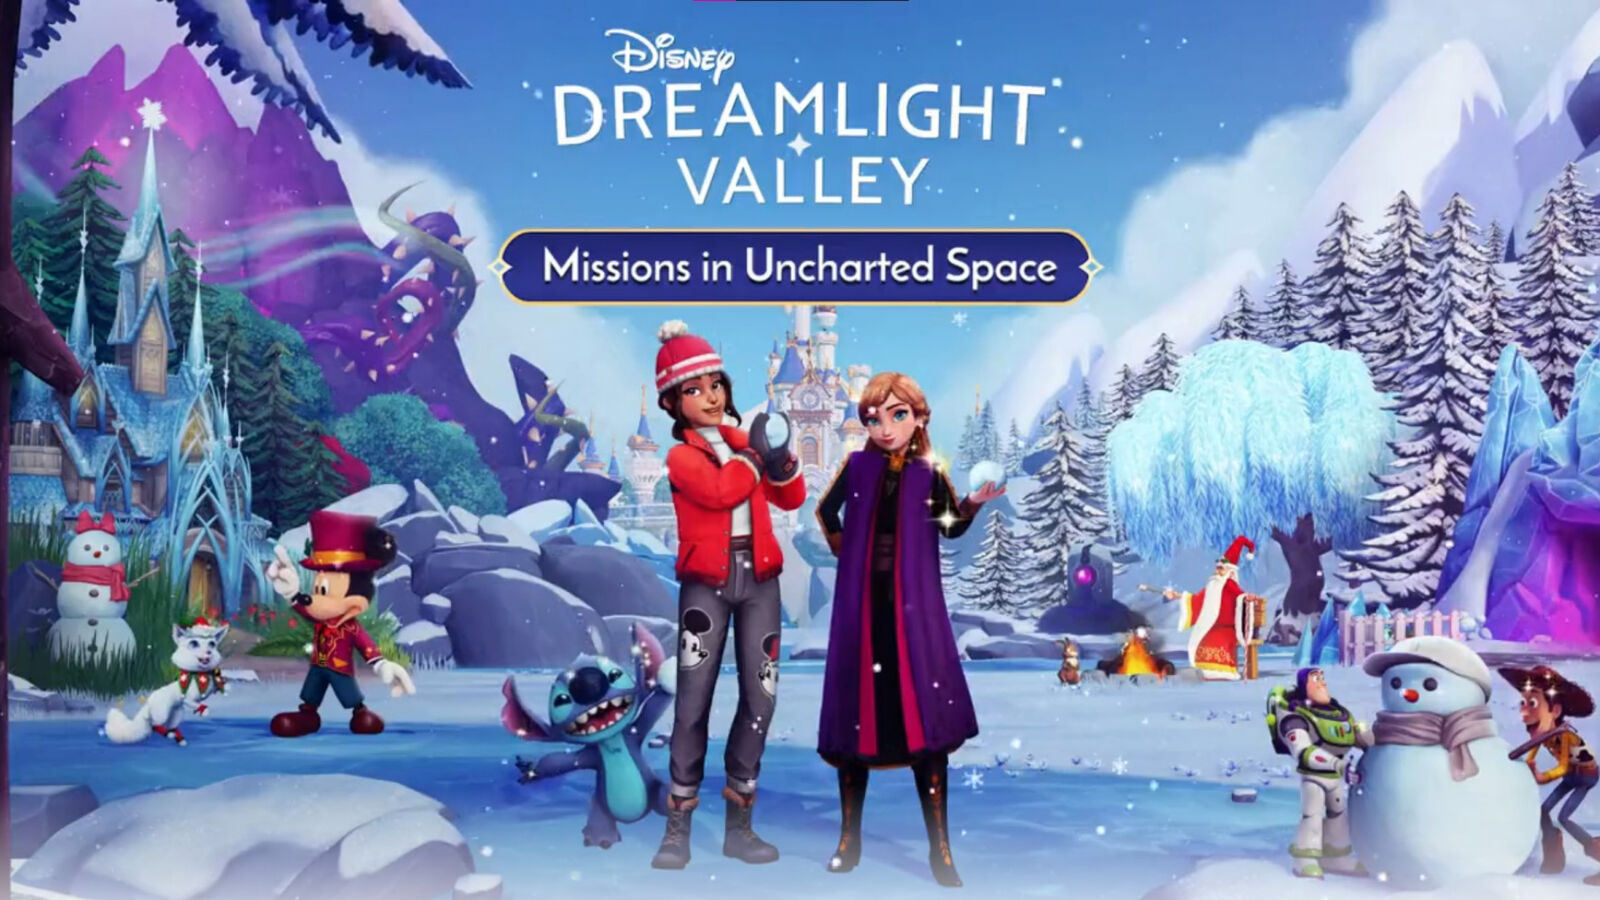 Stitch wurde in der neuesten Disney Dreamlight Valley-Promo gehänselt